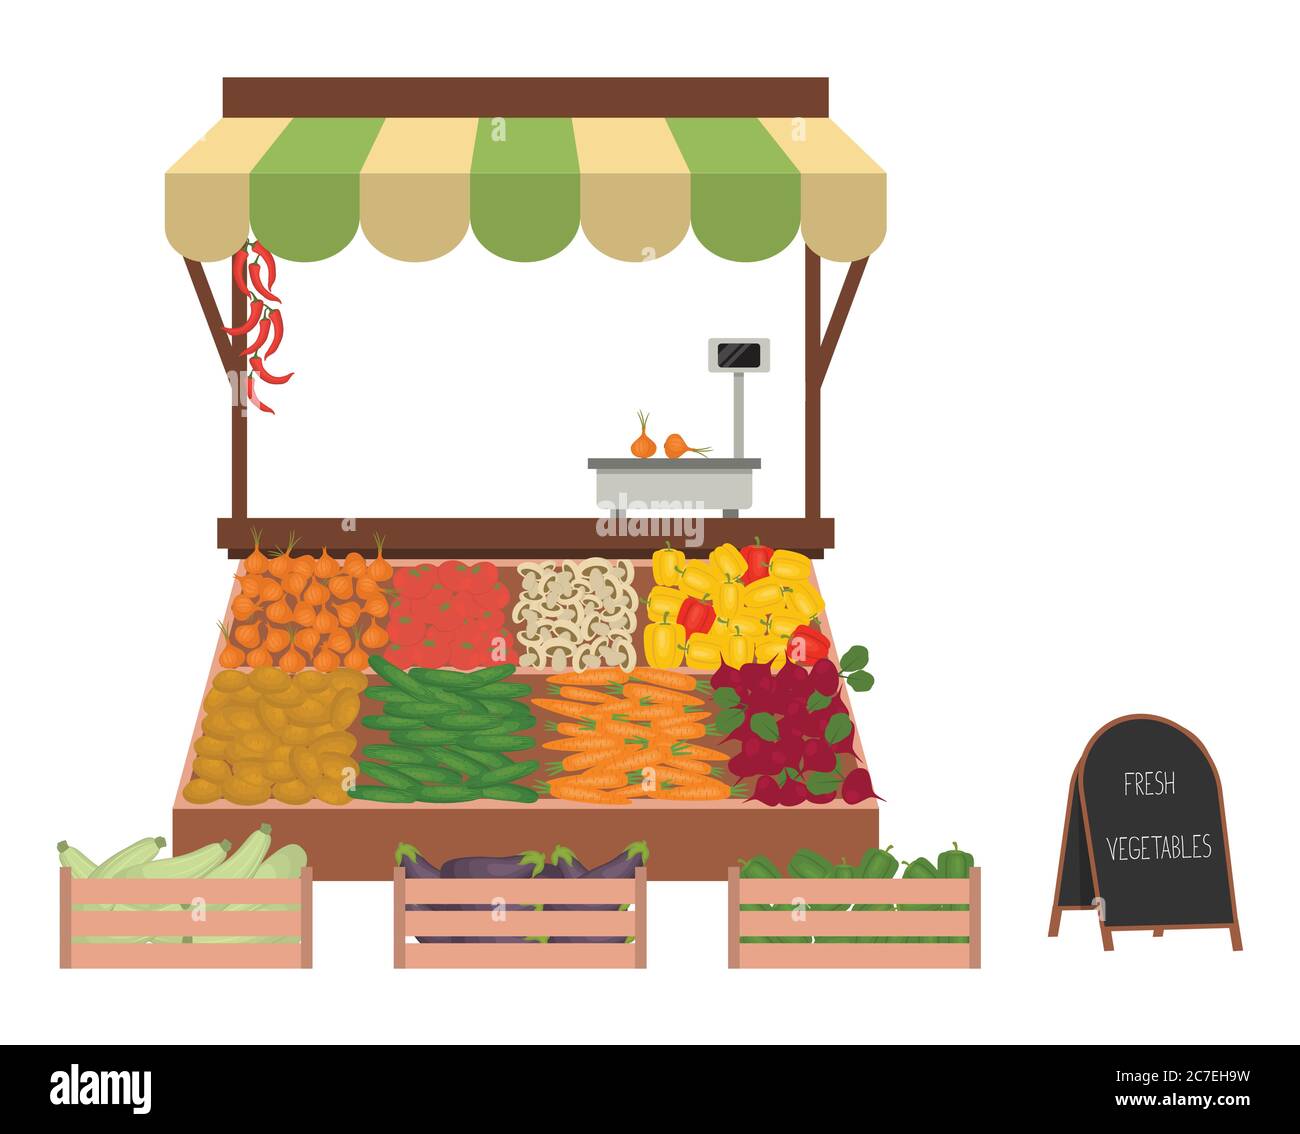 Tablett mit Gemüse auf dem Markt. Arbeitsplatz des Marktverkäufers. Es gibt Schuppen und Waren: Gurken, Zwiebeln, Karotten, Auberginen, Zucchini, Perren Stock Vektor